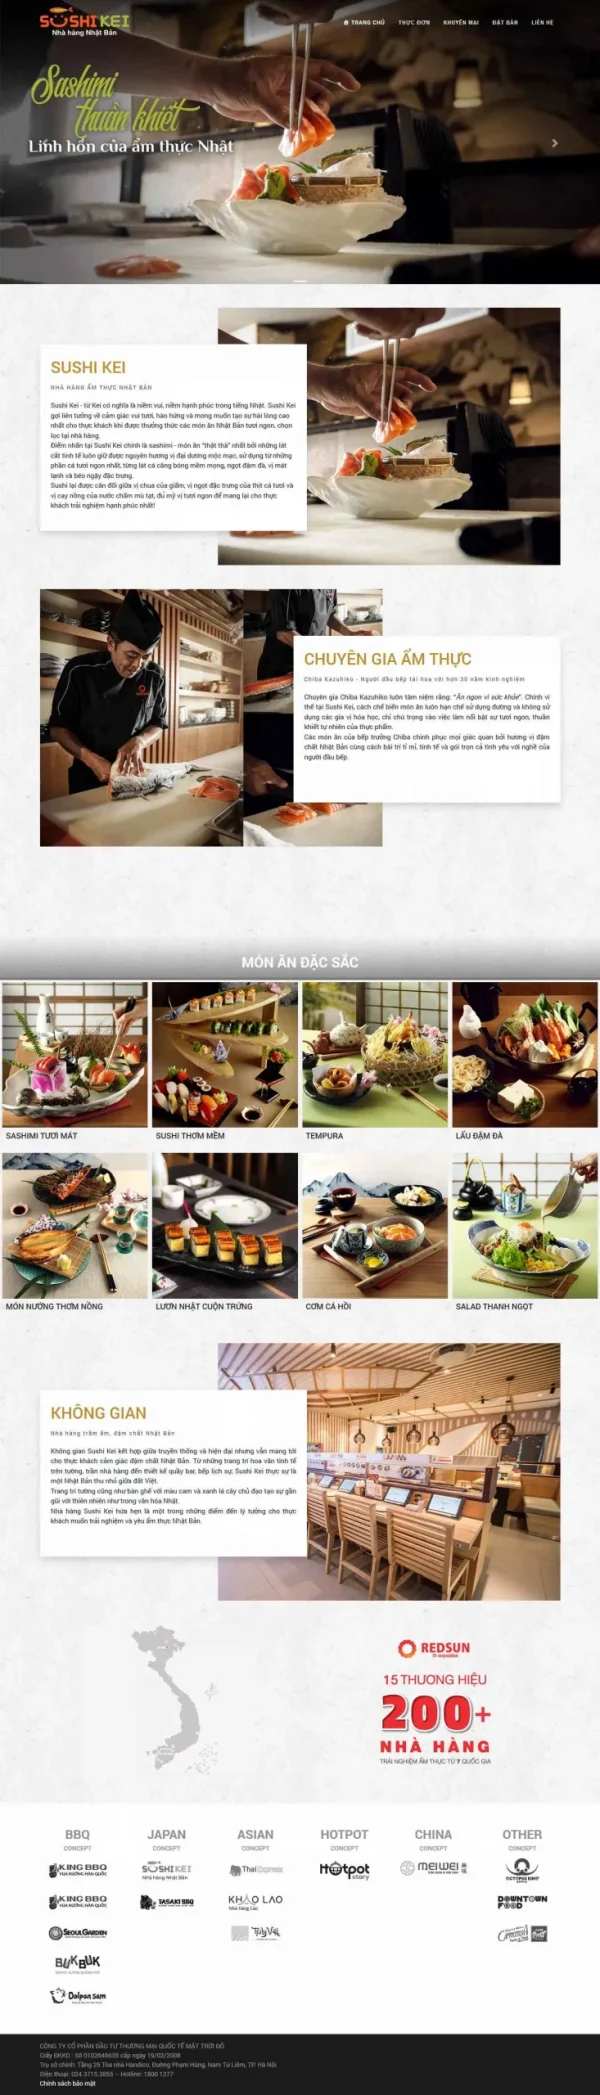 Mẫu giao diện website nhà hàng ẩm thực Nhật Bản Sushi Kei